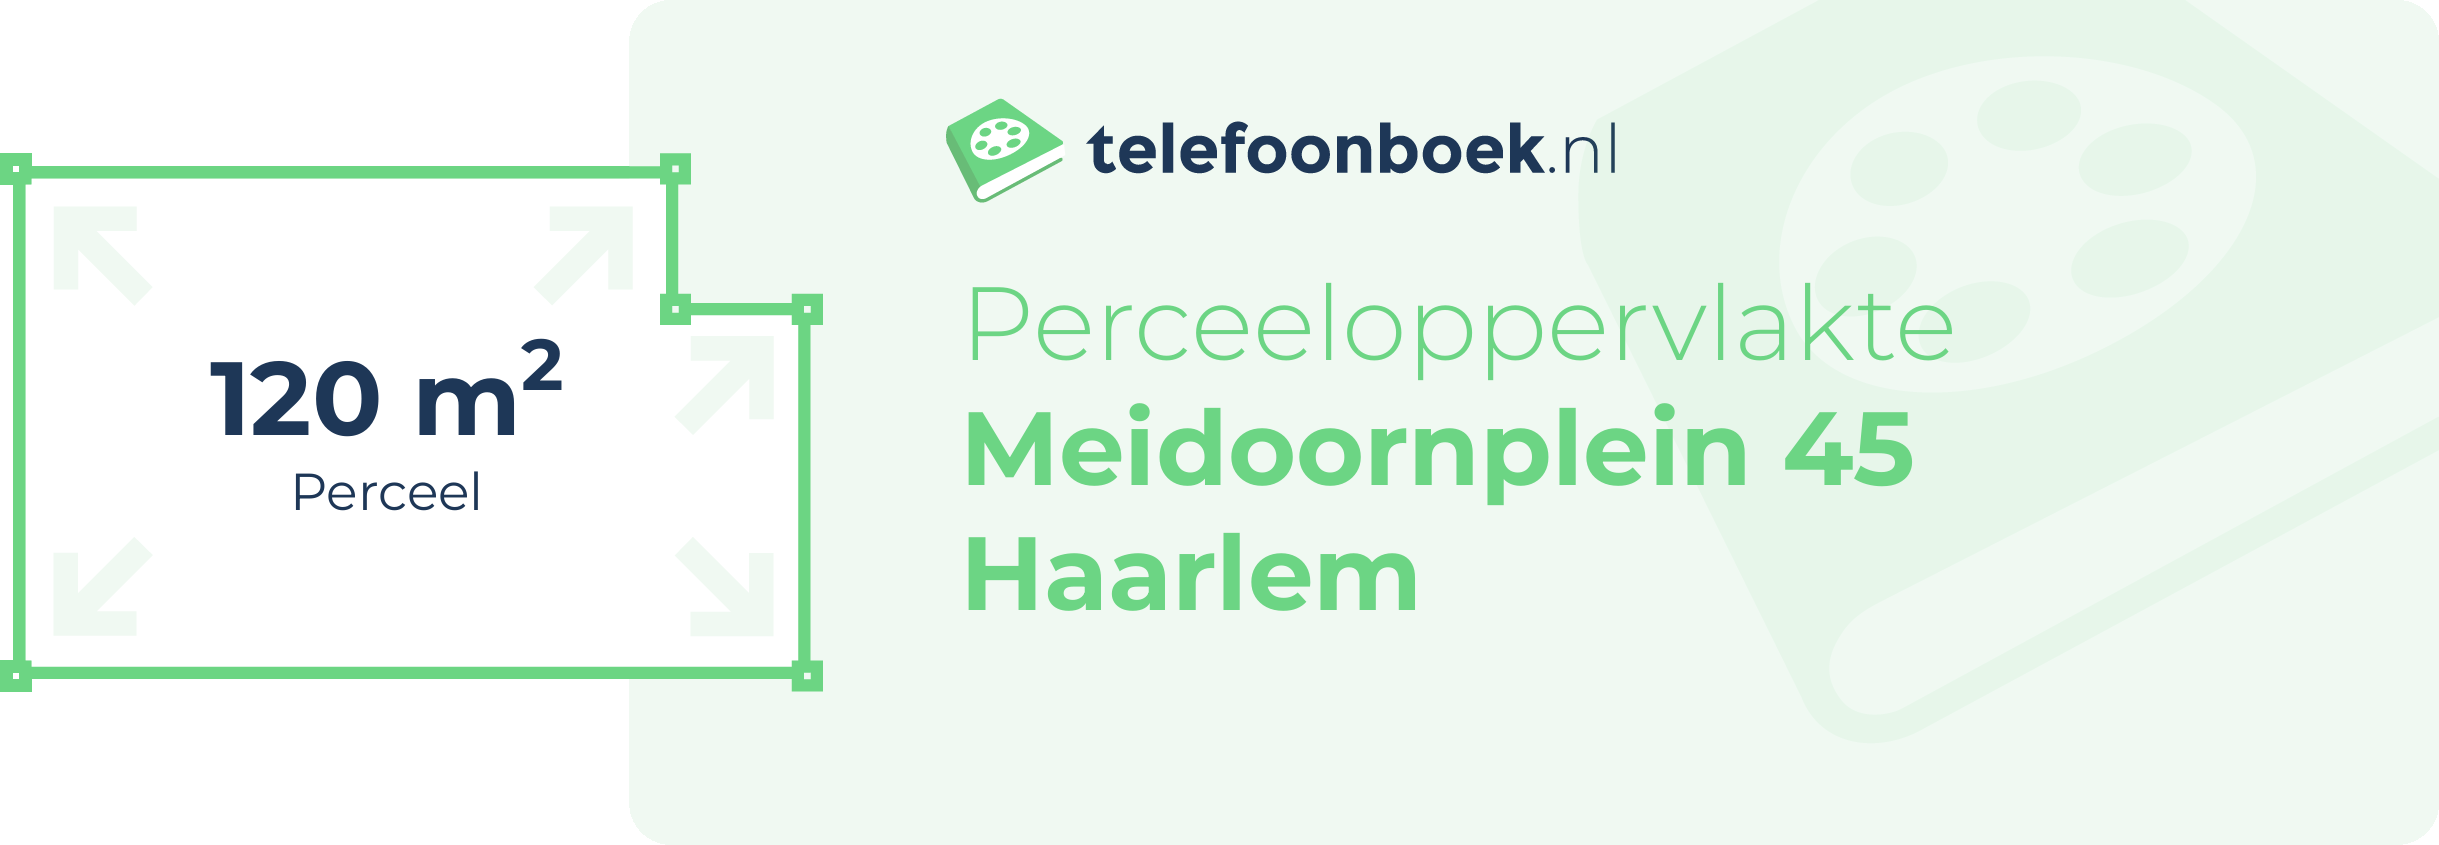 Perceeloppervlakte Meidoornplein 45 Haarlem